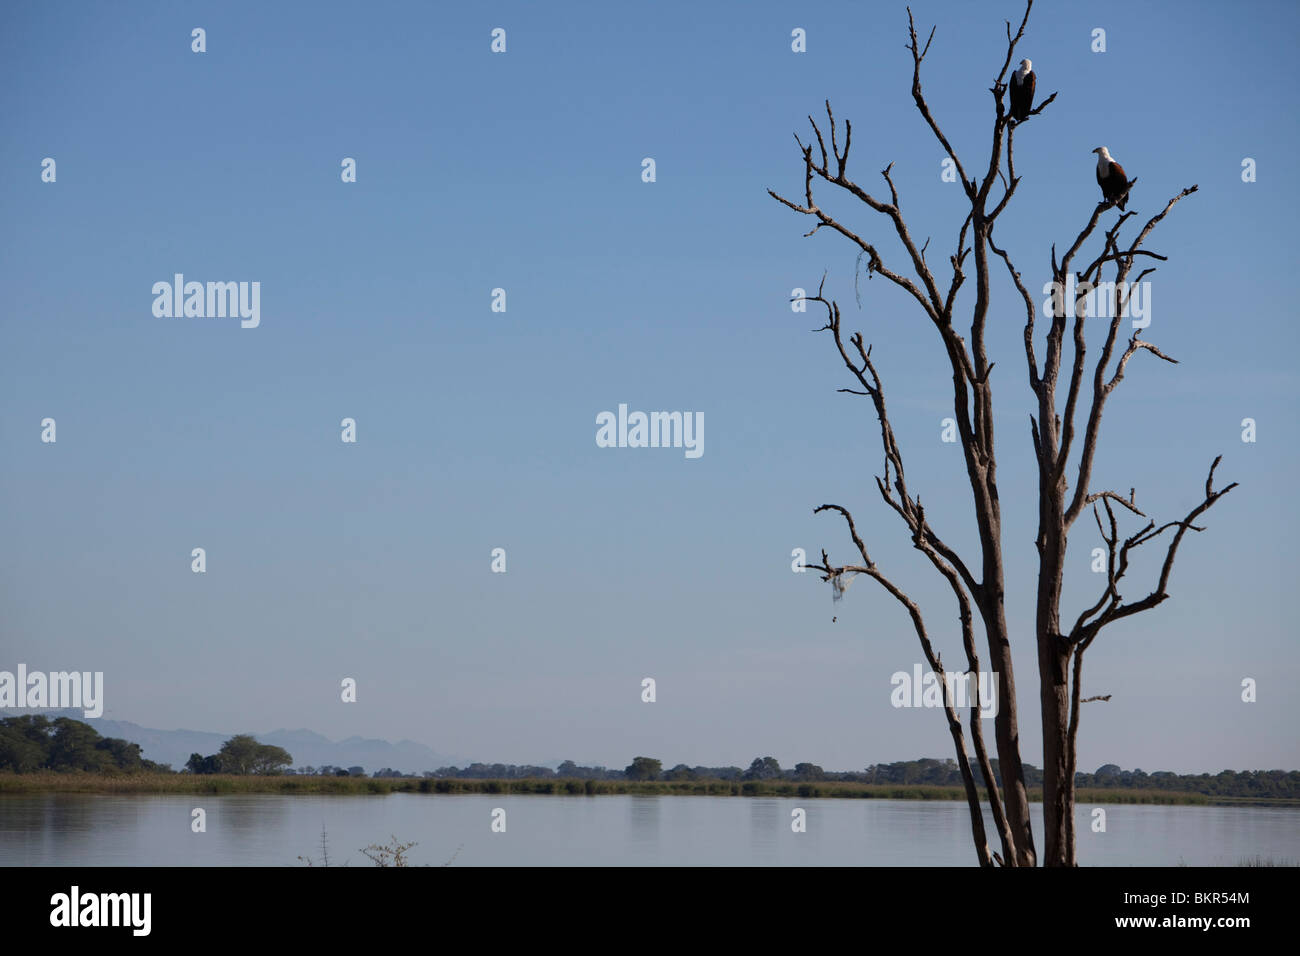 Il Malawi, Superiore Shire Valley, Liwonde Parco Nazionale. African Pesce persico le aquile in un ramo di morti che si affaccia sul fiume Shire. Foto Stock